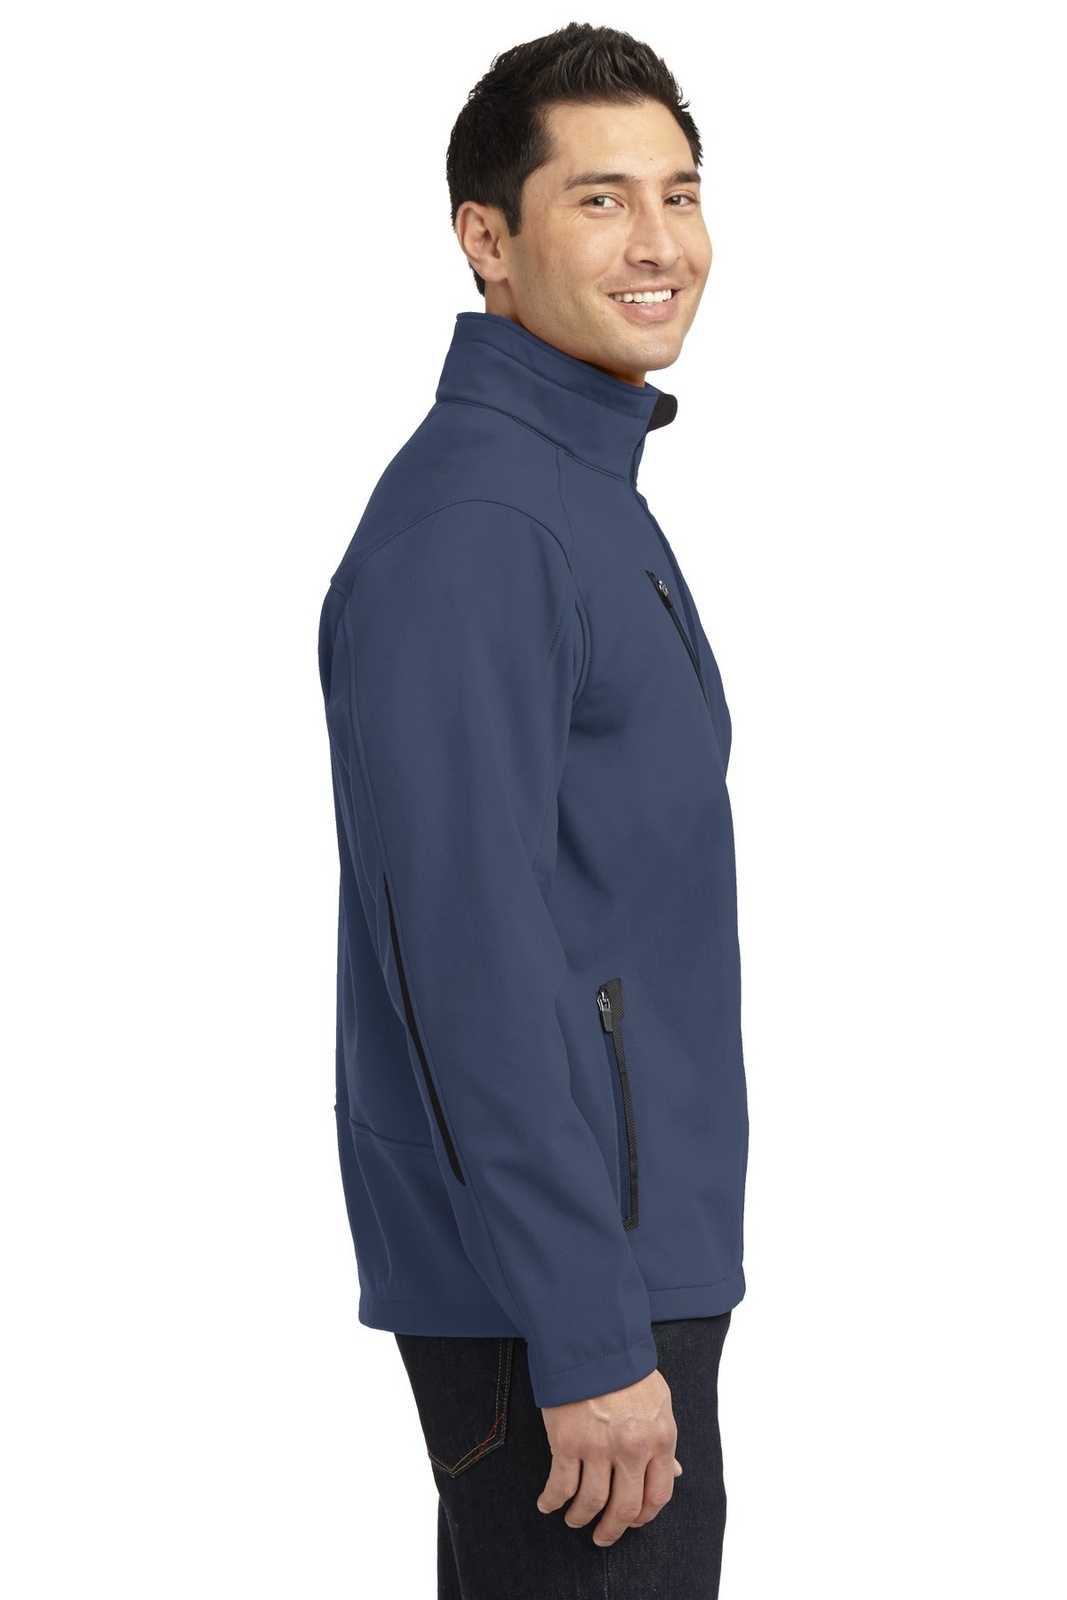 Louisville Slugger Mens XL Blue Short Sleeve 1/4 Zip Baseball Wind Shirt